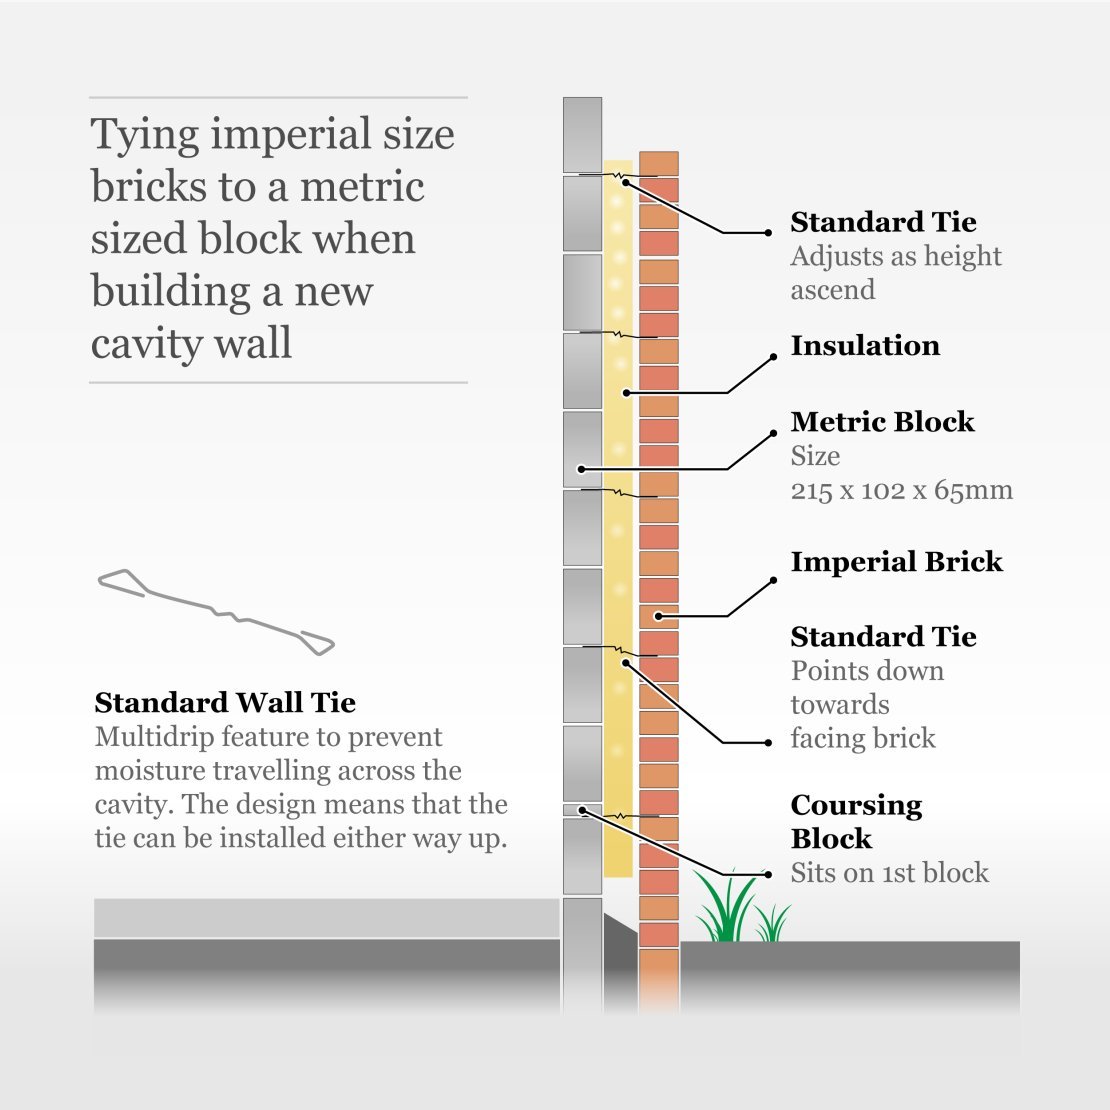 Standard ties for imperial bricks